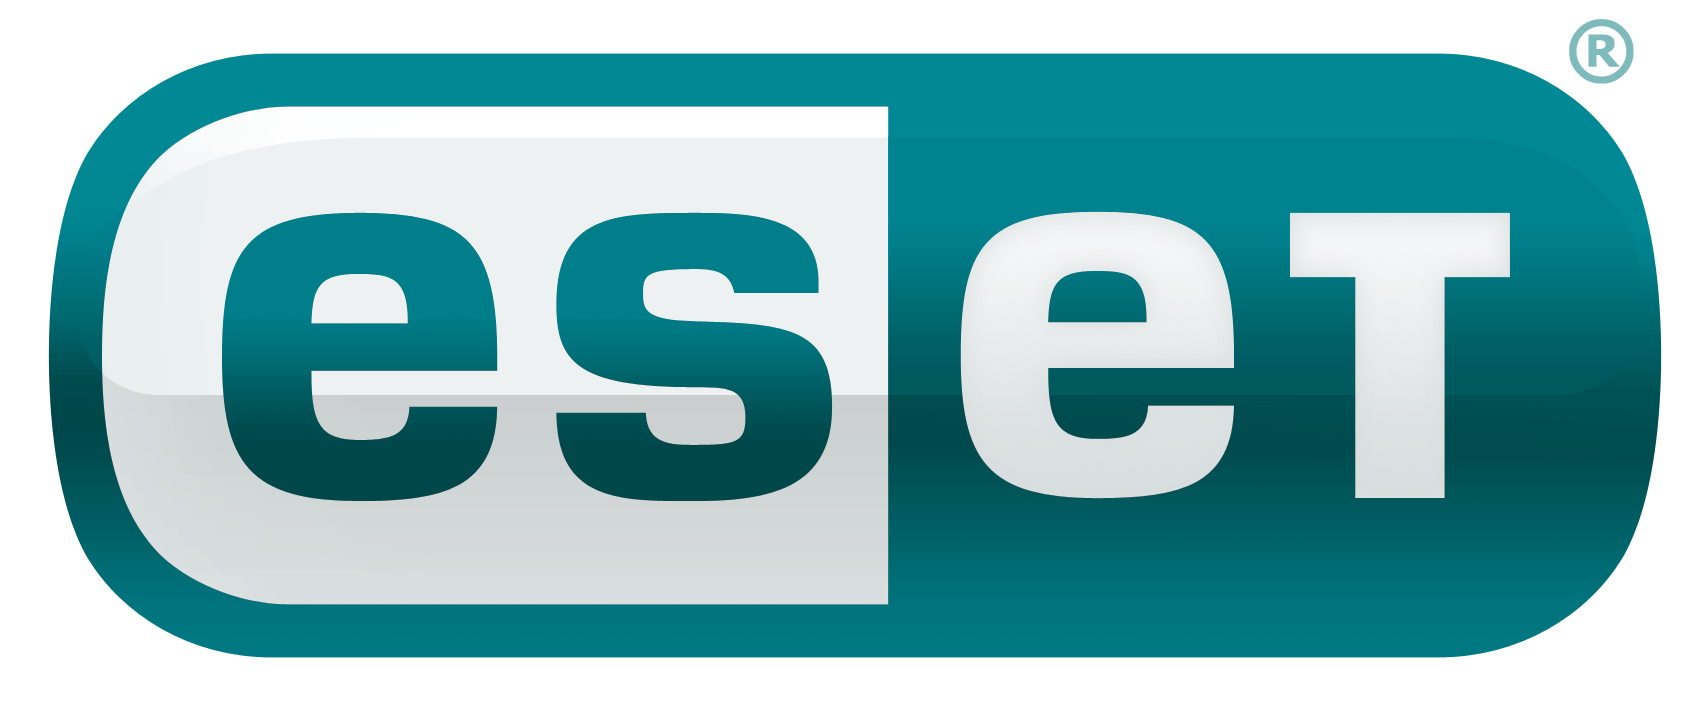 ESET выпустила антивирус для социальных сетей